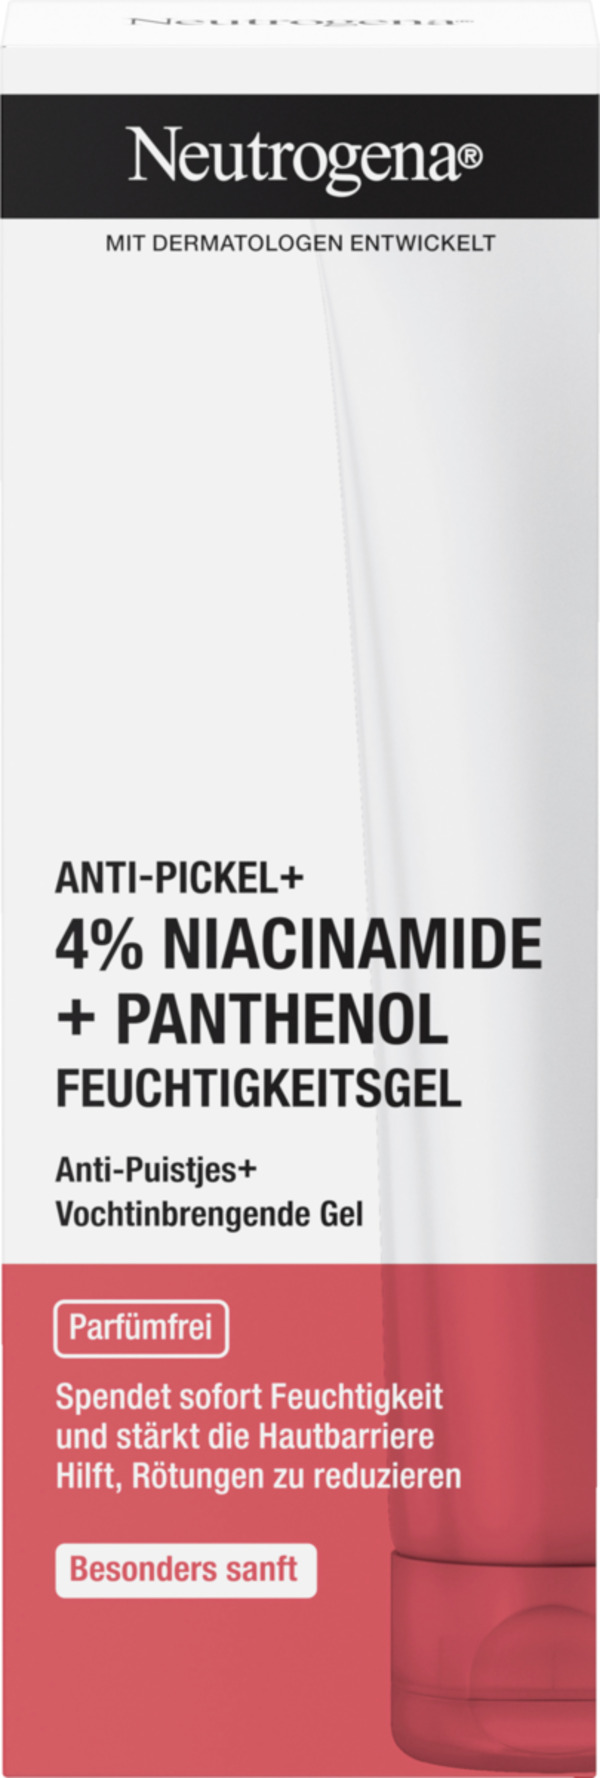 Bild 1 von Neutrogena Anti-Pickel + Feuchtigkeitsgel